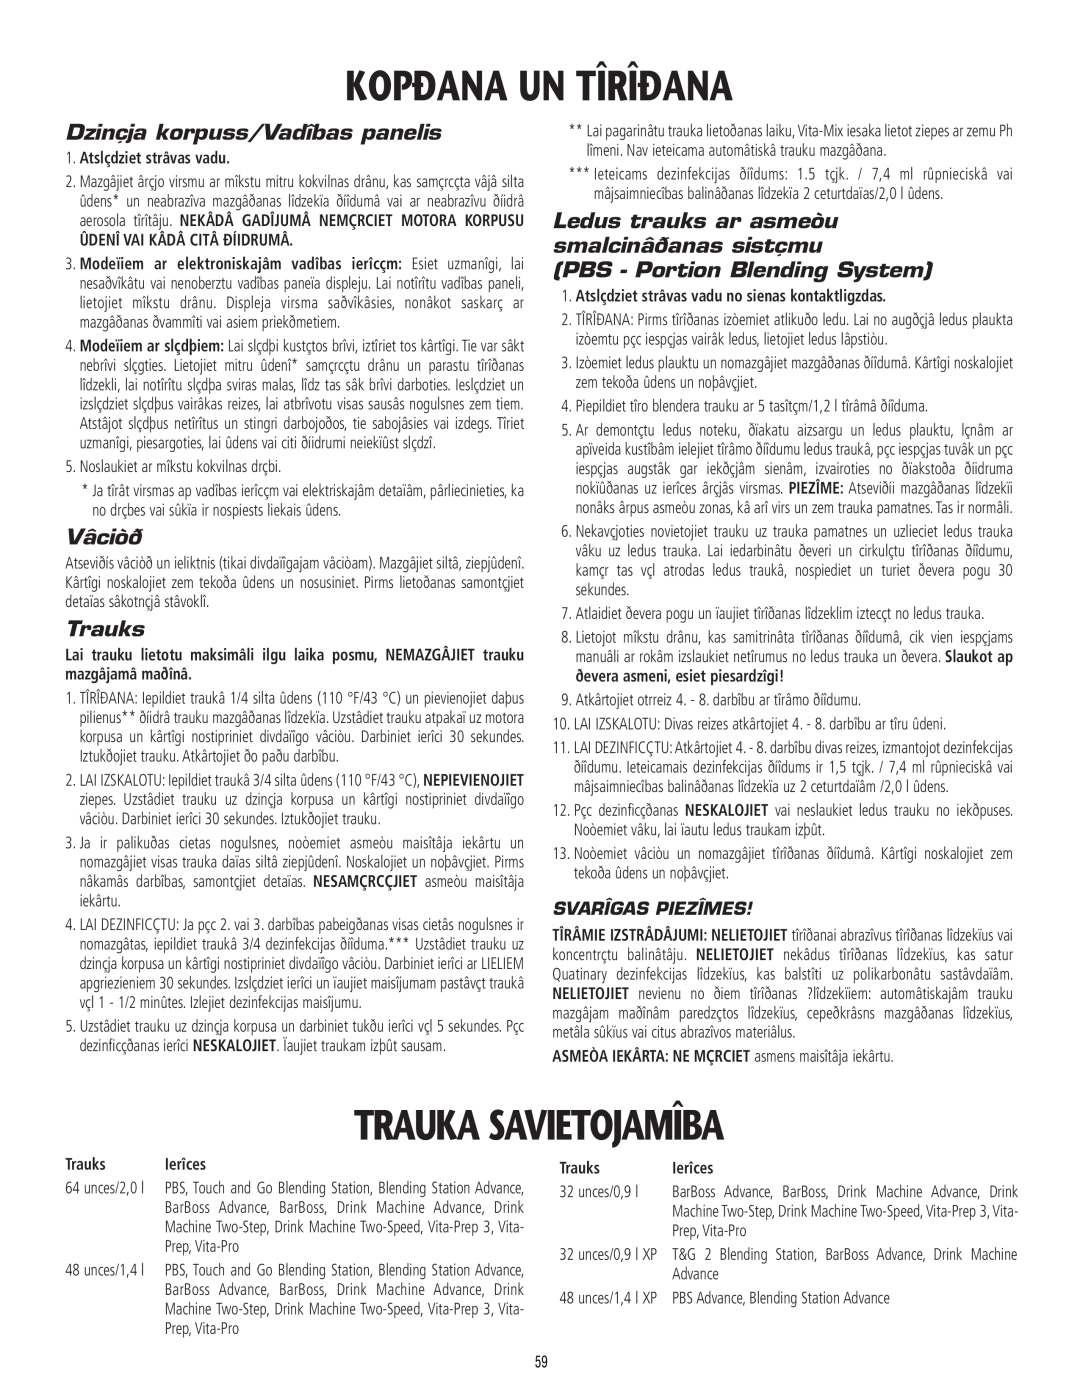 Vita-Mix 101807 manual Kopðana Un Tîrîðana, Trauka Savietojamîba, Dzinçja korpuss/Vadîbas panelis, Vâciòð, Trauks, Ierîces 